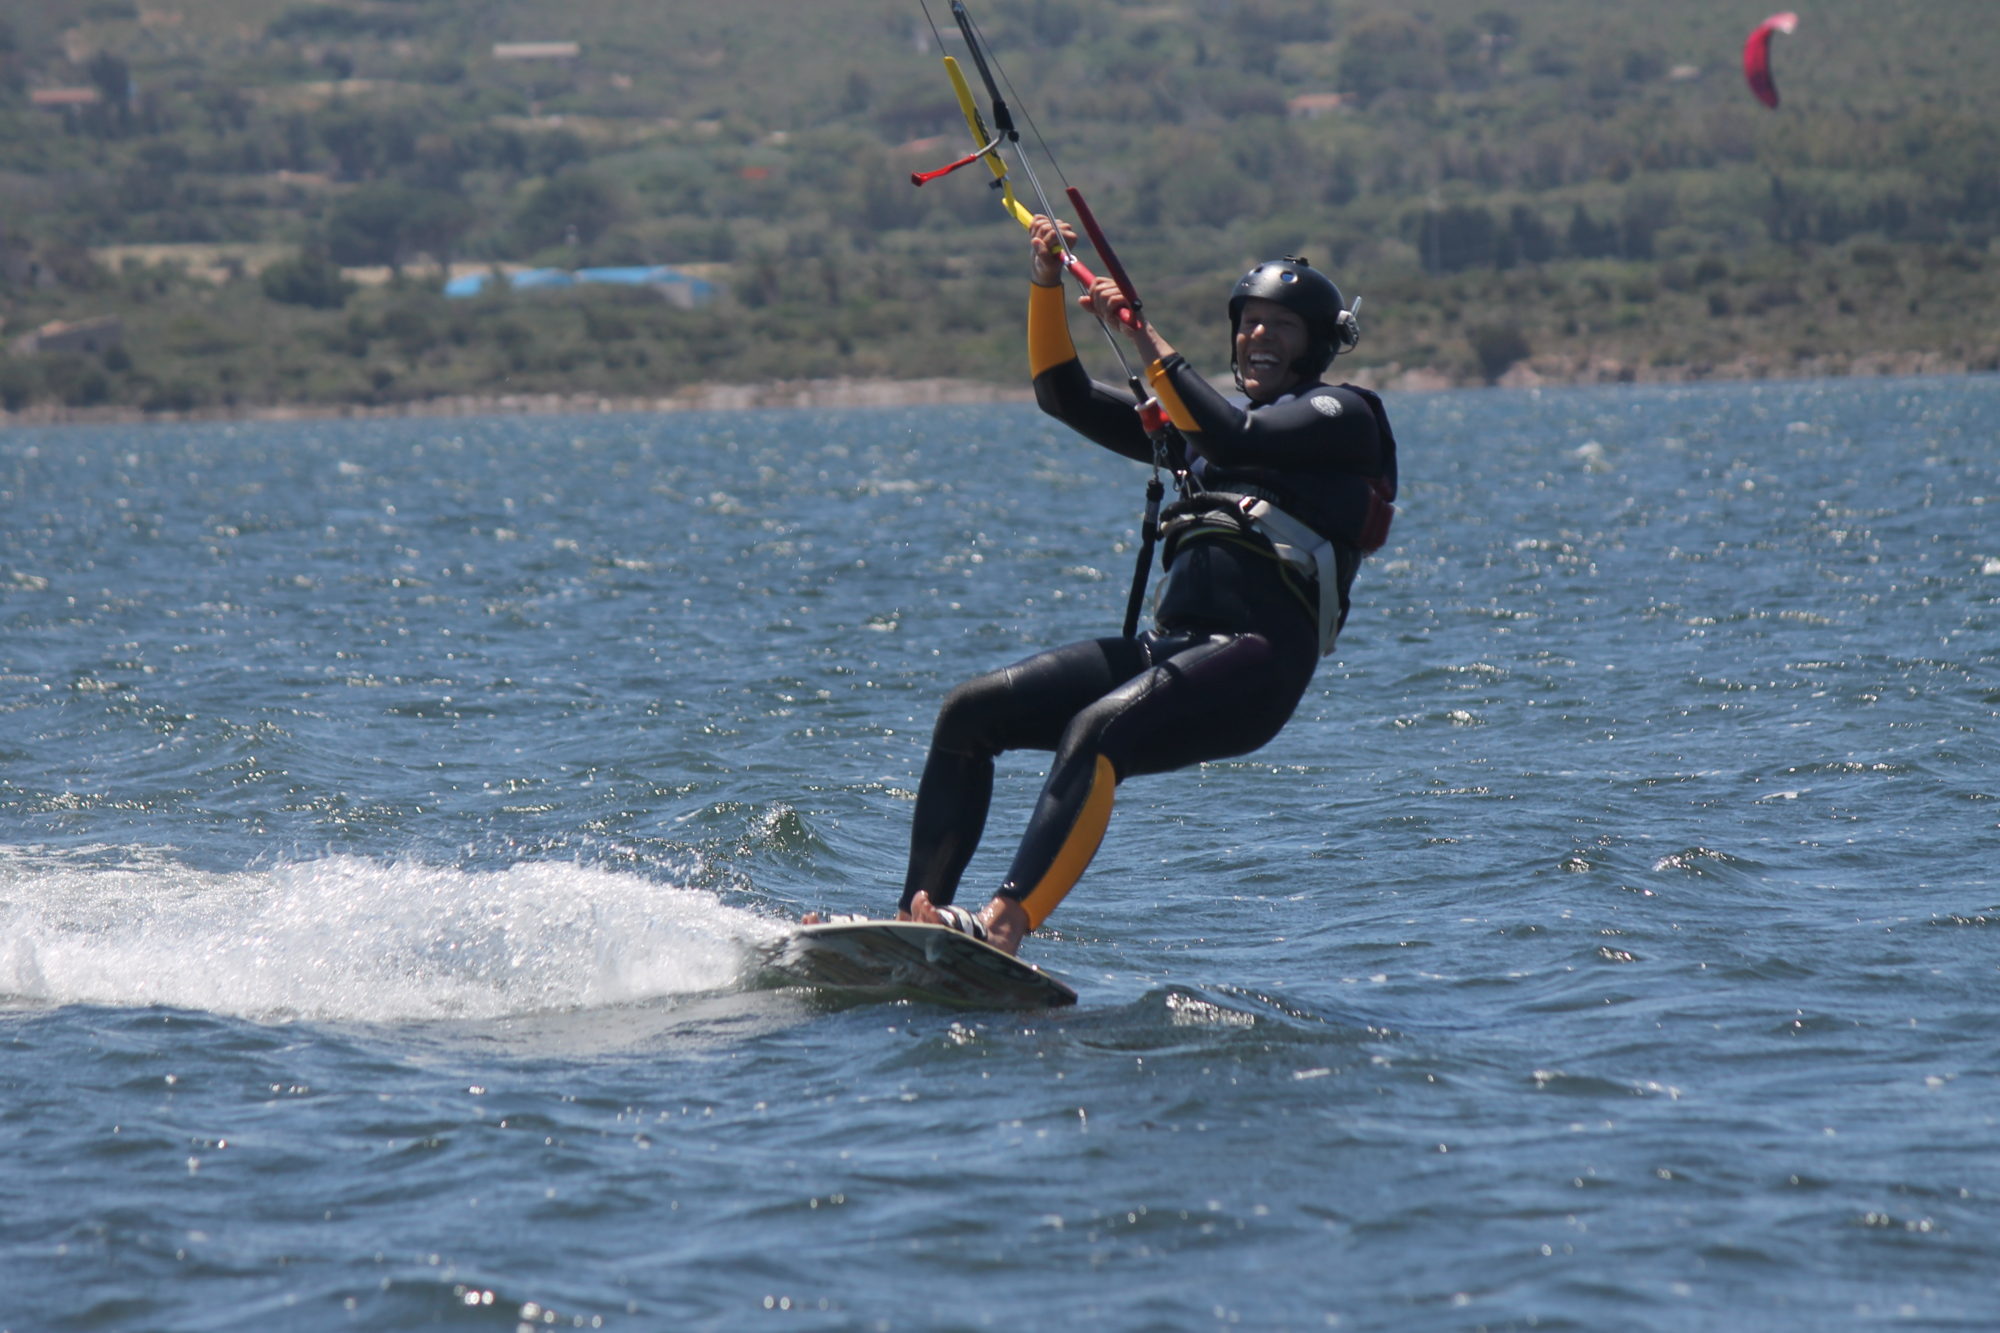 Kitesurf-Kurs in Punta Trettu Sardinien: Kitesurf Lernen im fantastischen Kite-Spot von Punta Trettu mit seichtem Wasser